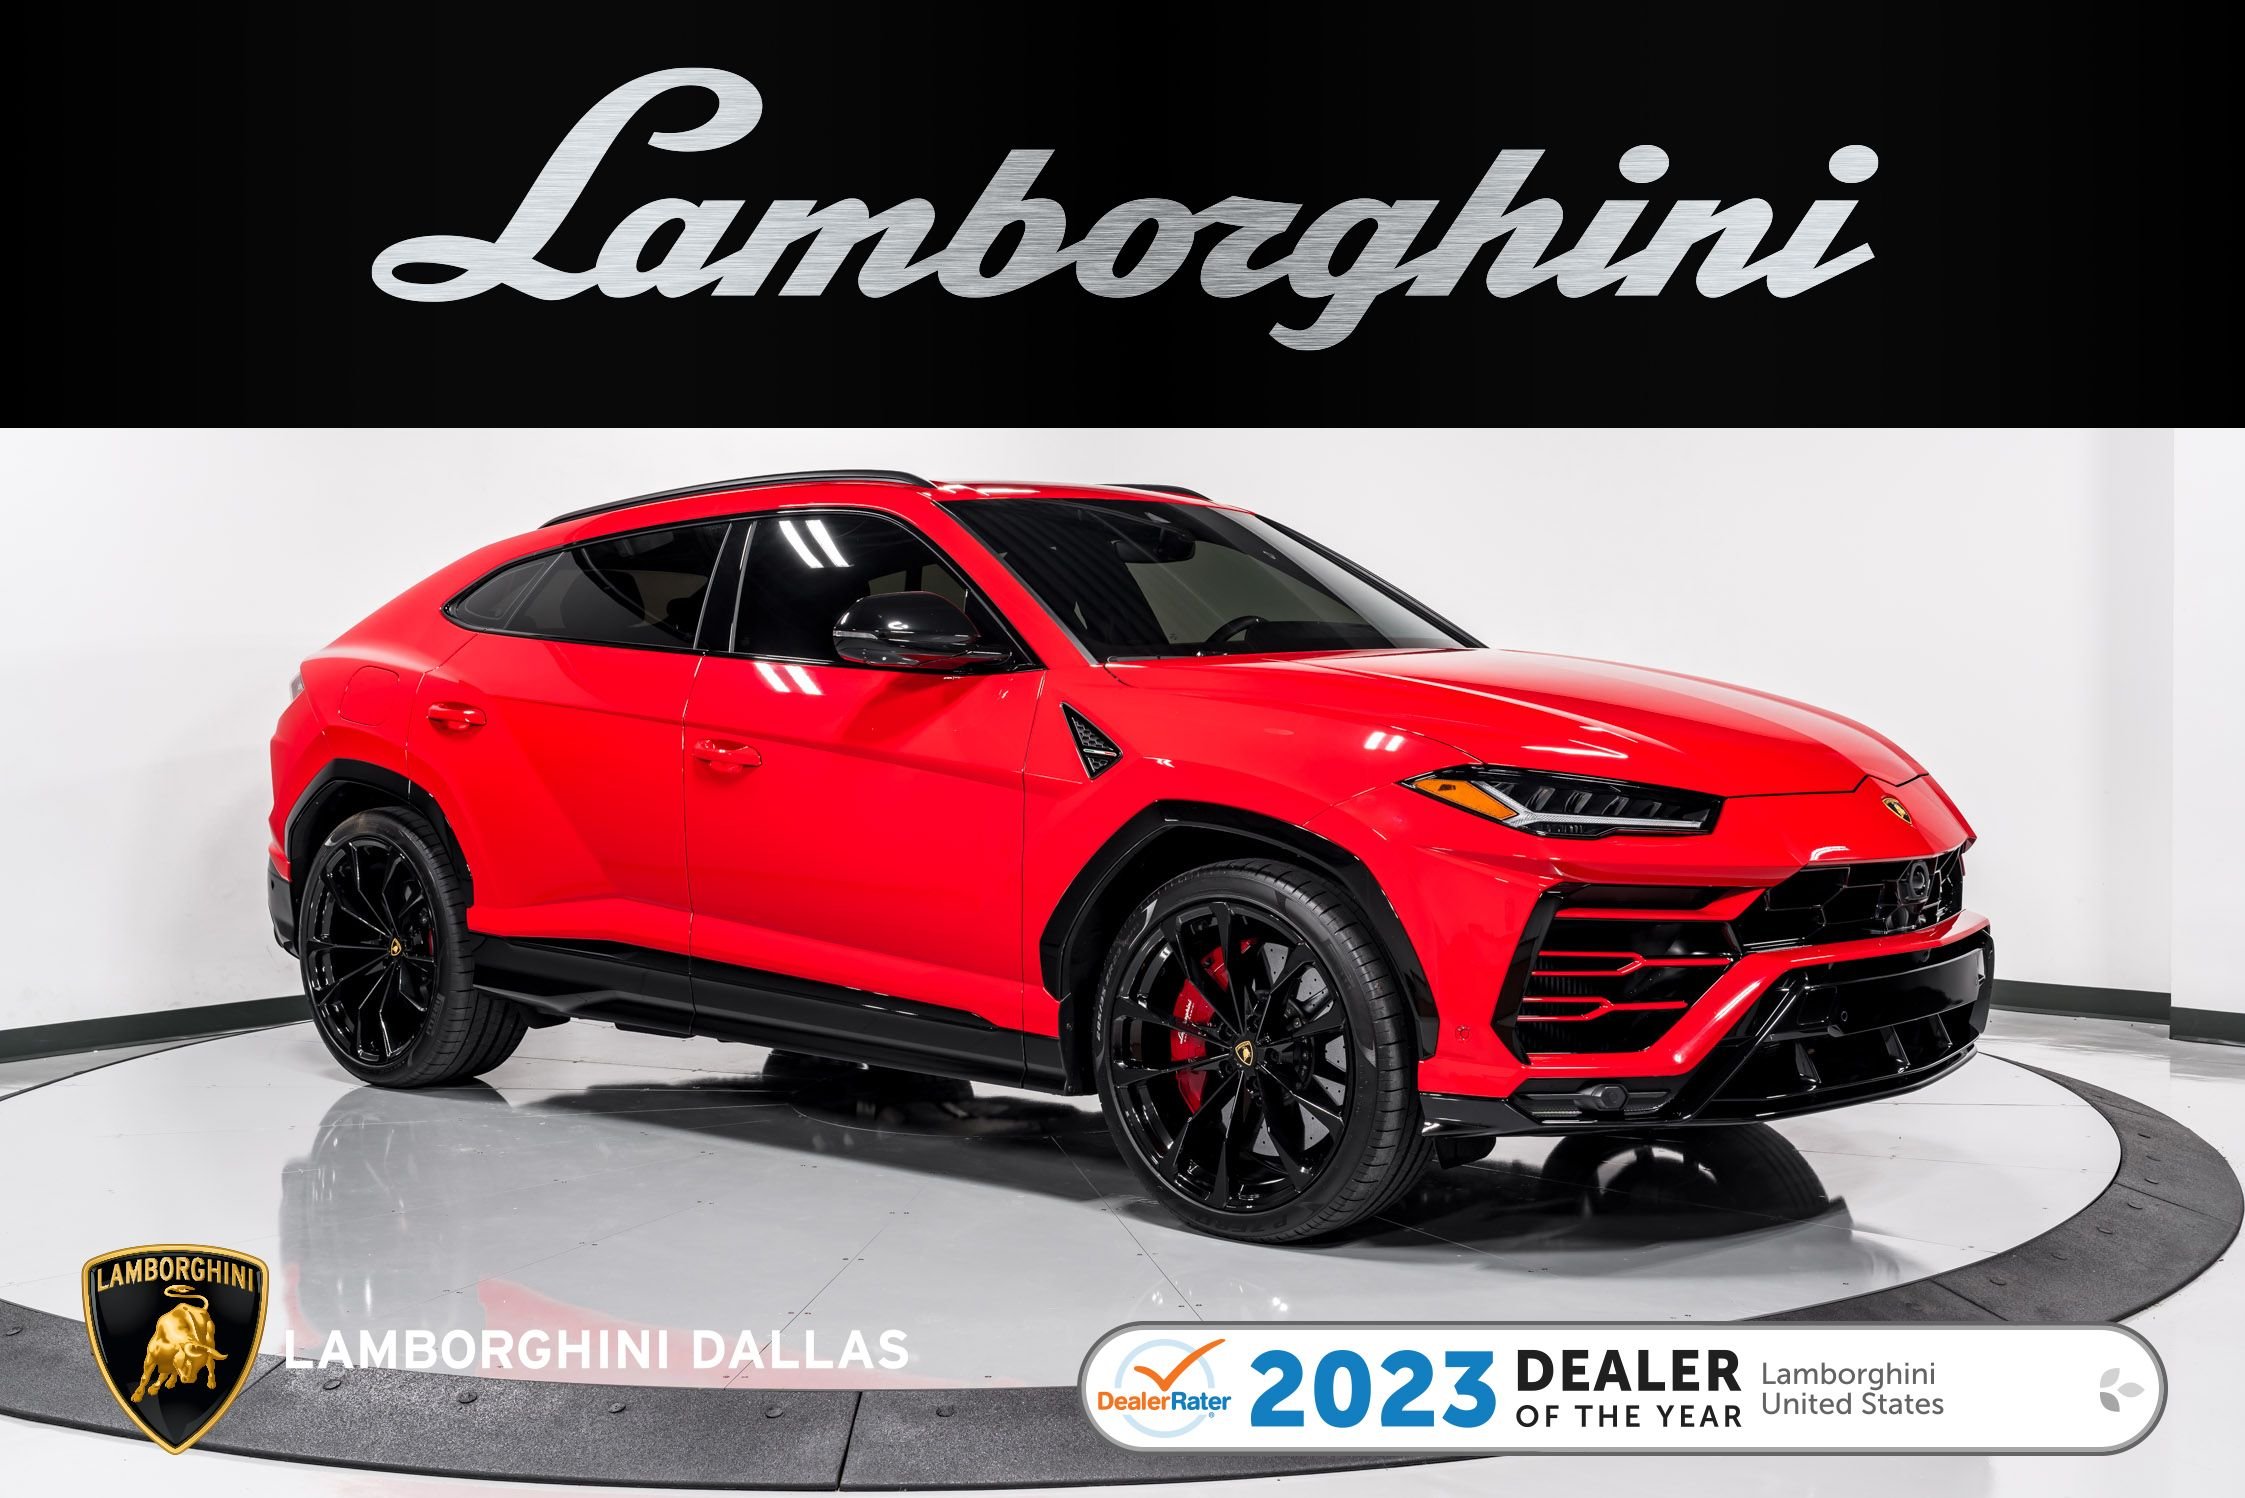 Used 2021 Lamborghini Urus For Sale at LAMBORGHINI DALLAS | VIN 